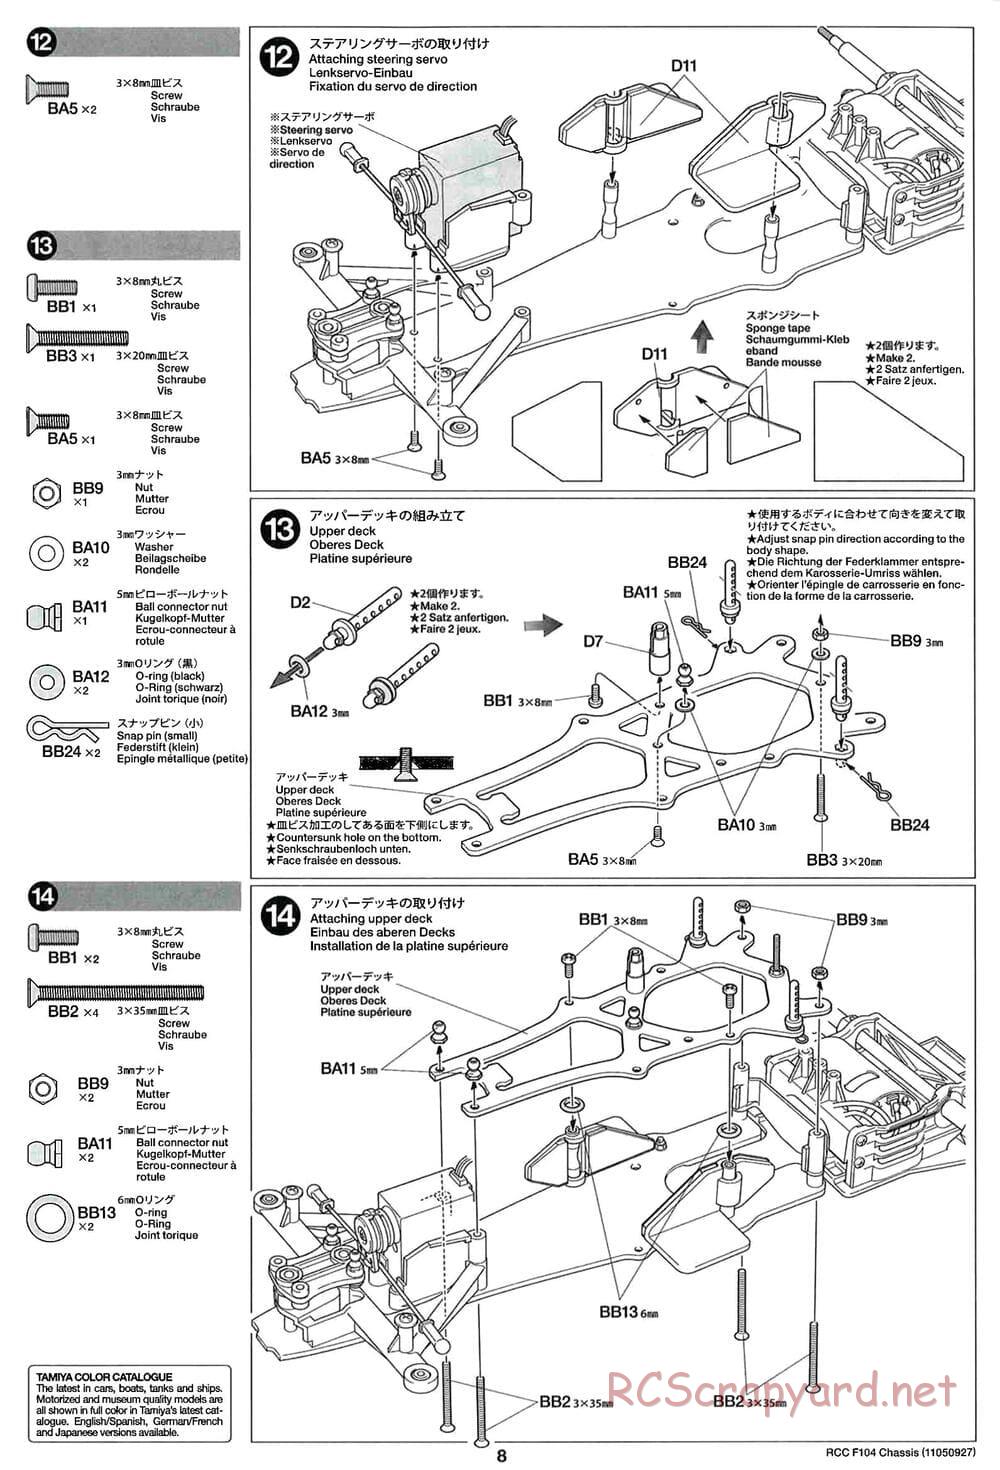 Tamiya - F104 Chassis - Manual - Page 8